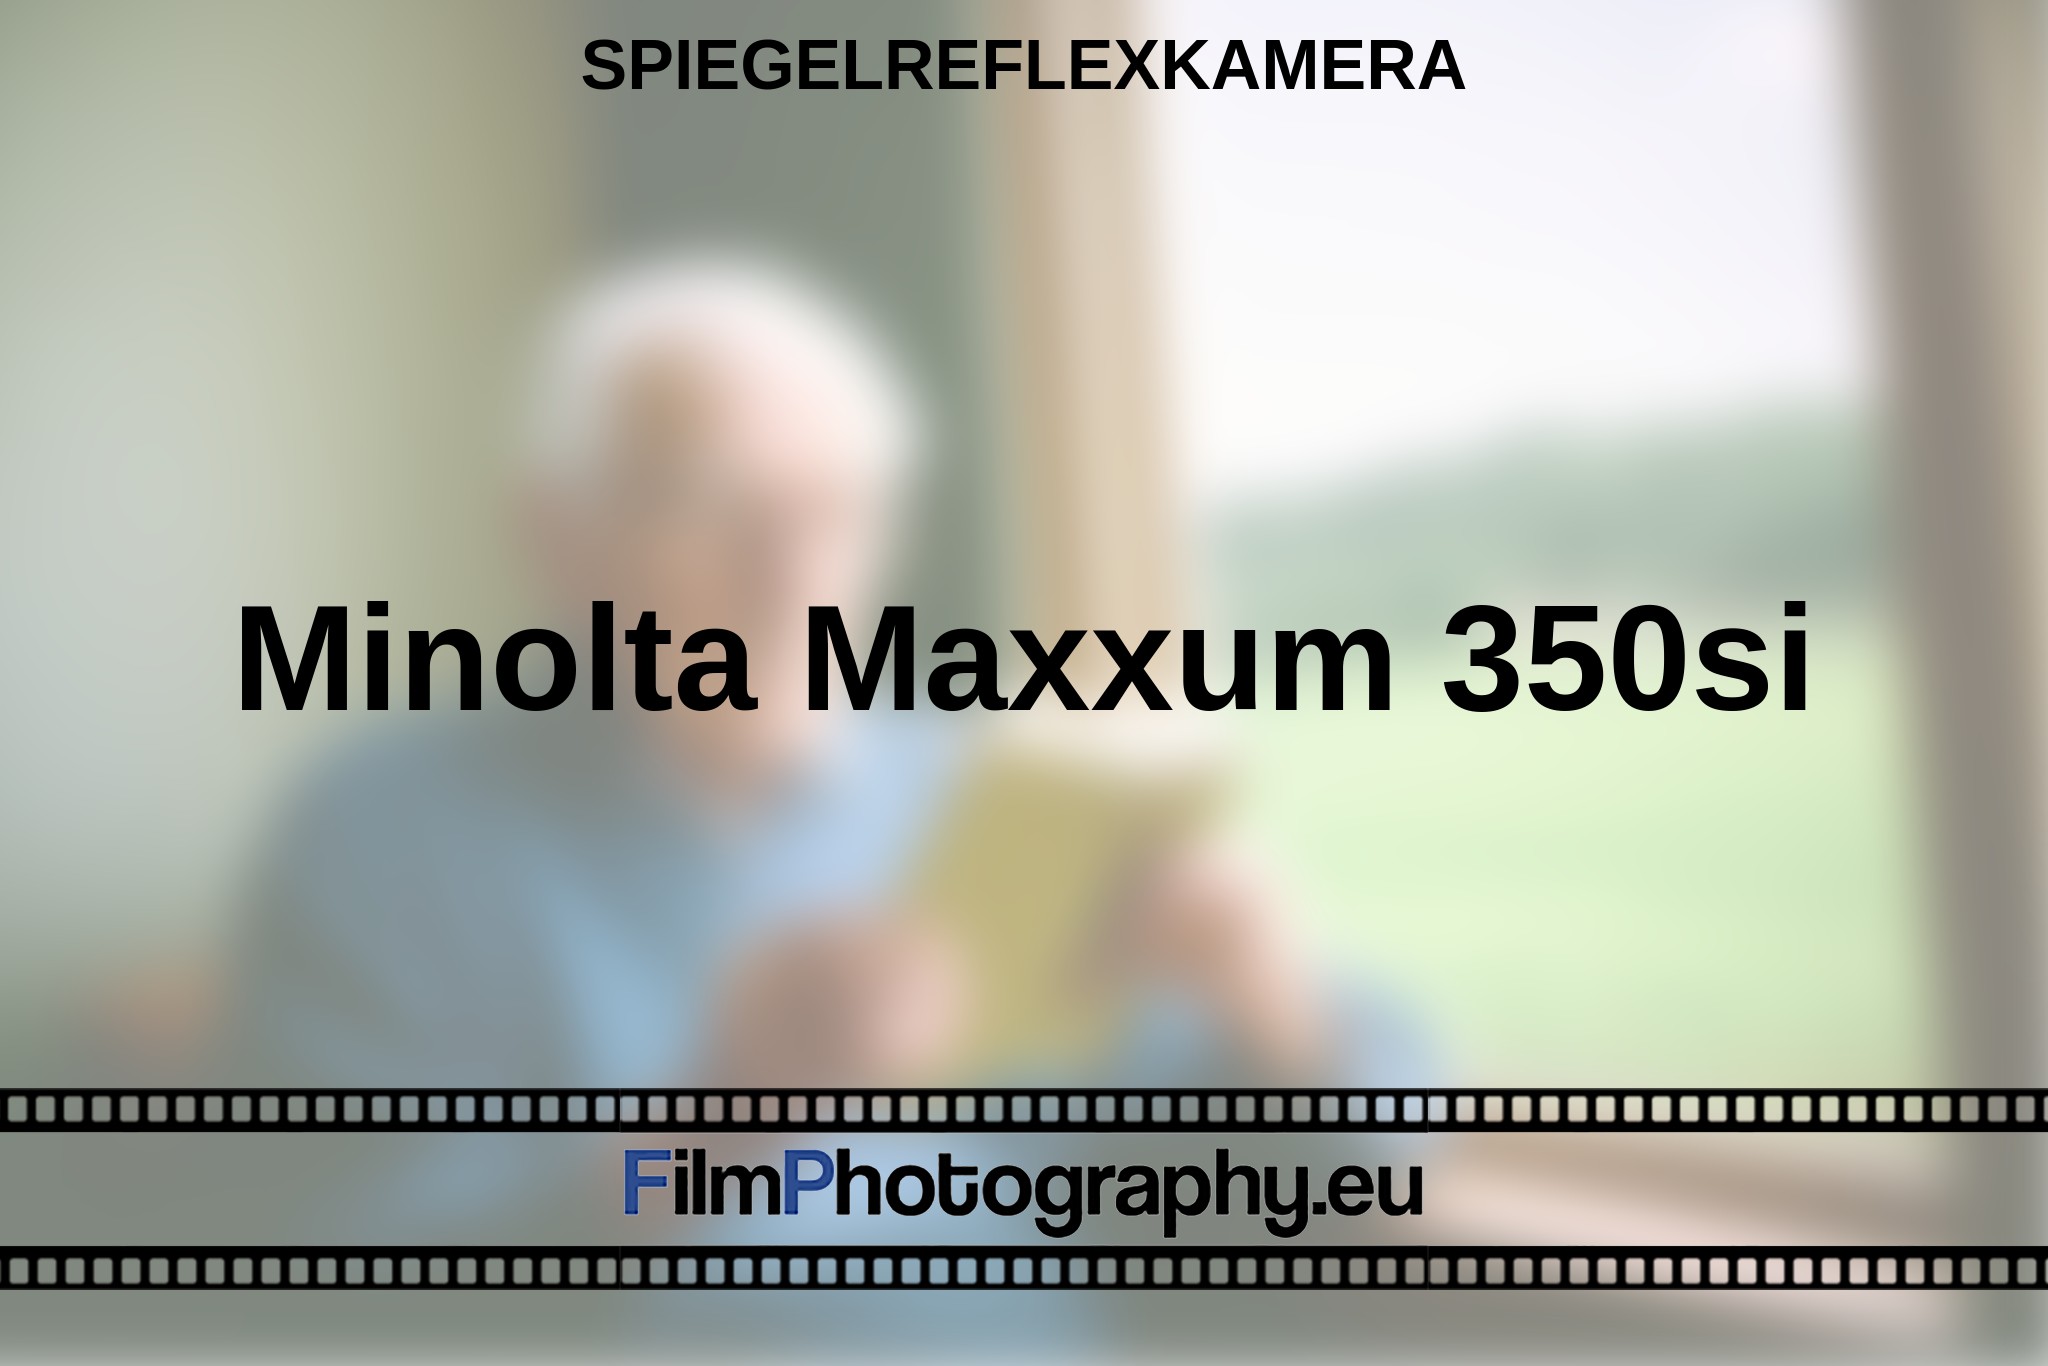 minolta-maxxum-350si-spiegelreflexkamera-bnv.jpg